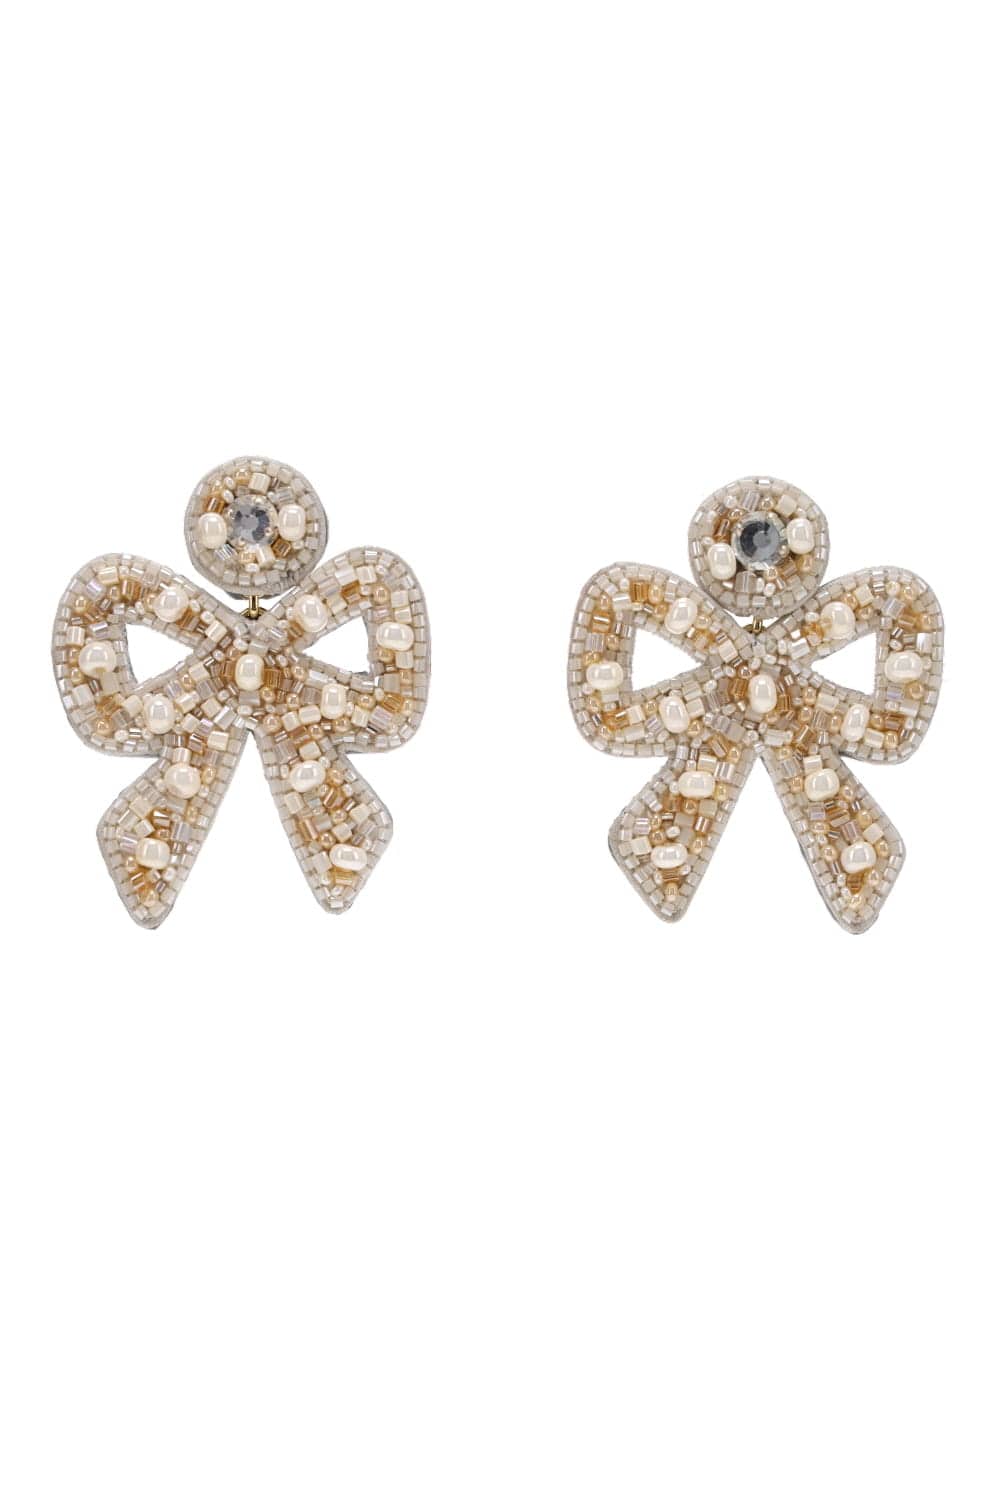 Diamond Bow Earrings on 14K White Gold